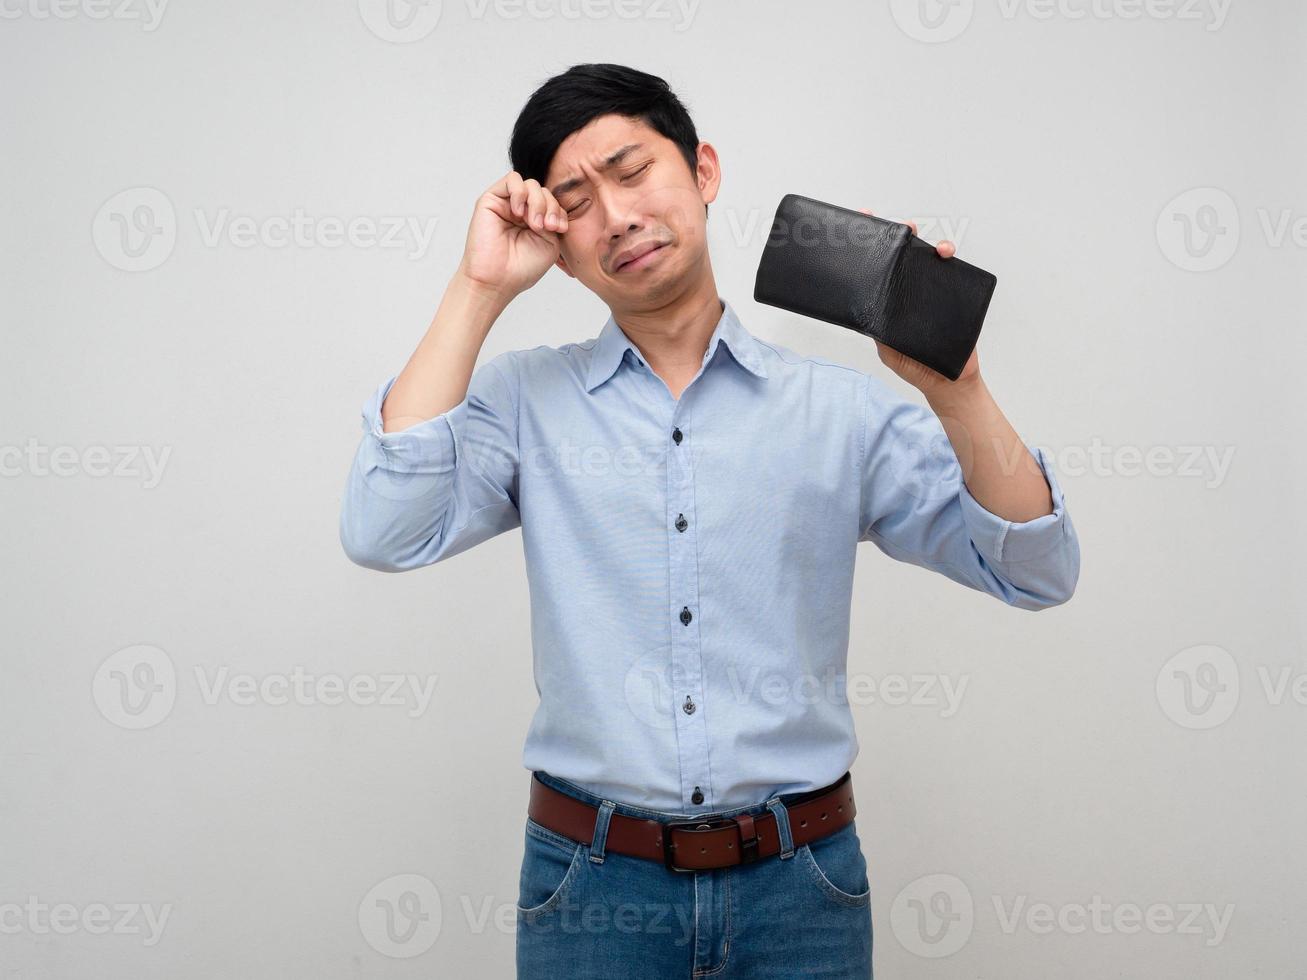 homme d'affaires asiatique se sent découragé et pleure à propos de pas d'argent, le pauvre homme tient son portefeuille sans argent photo